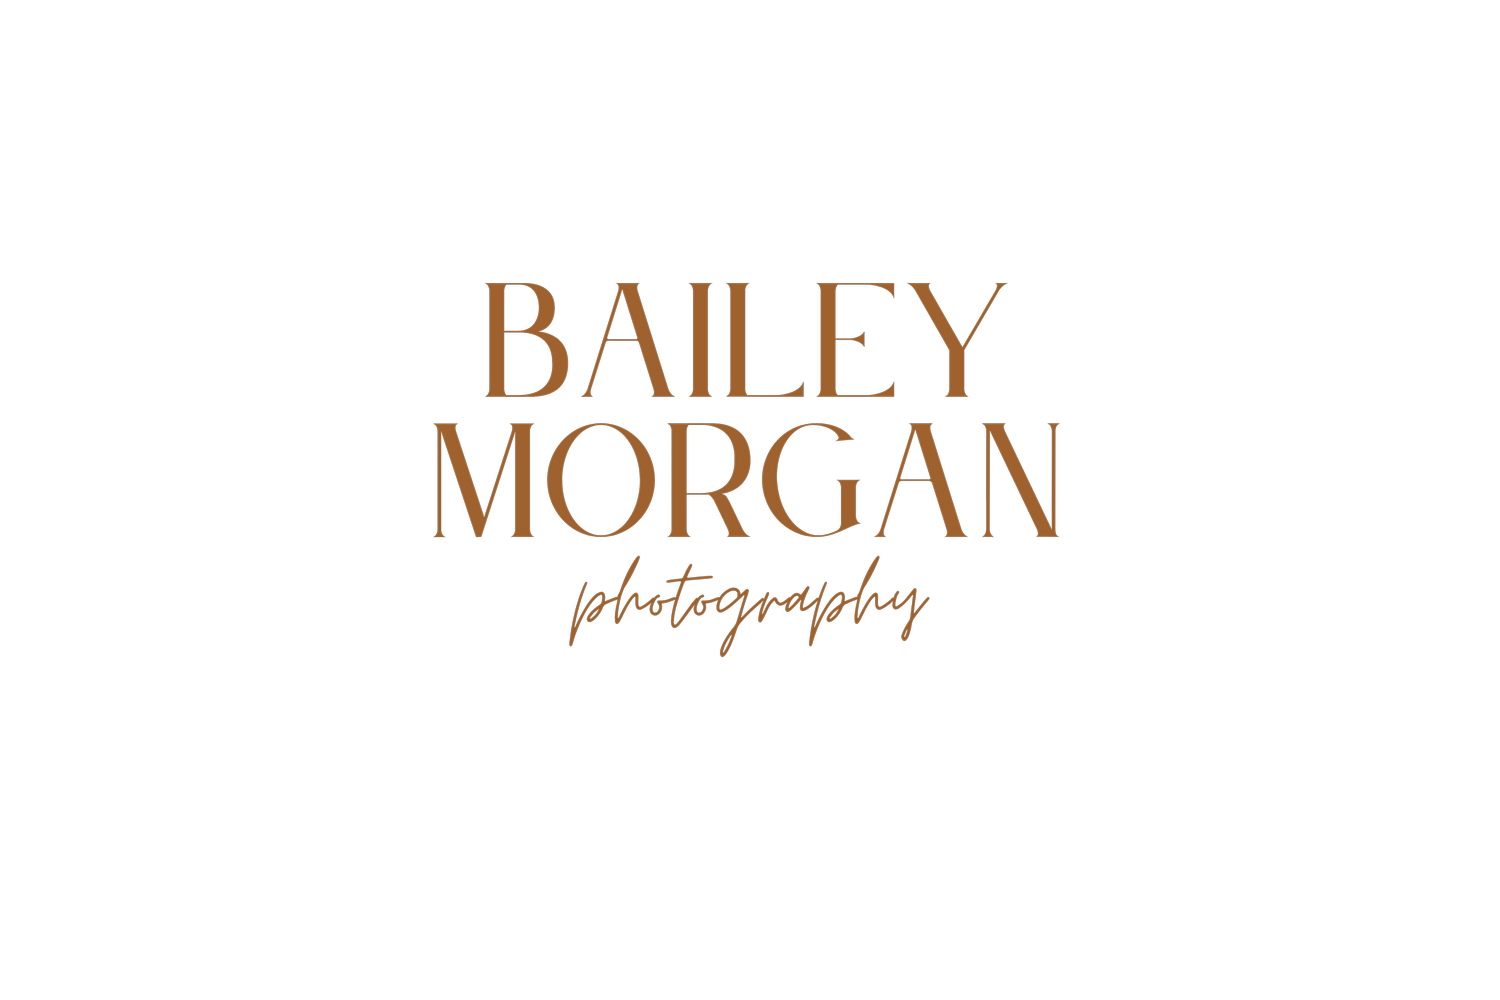 BAILEY MORGAN PHOTOGRAPHY